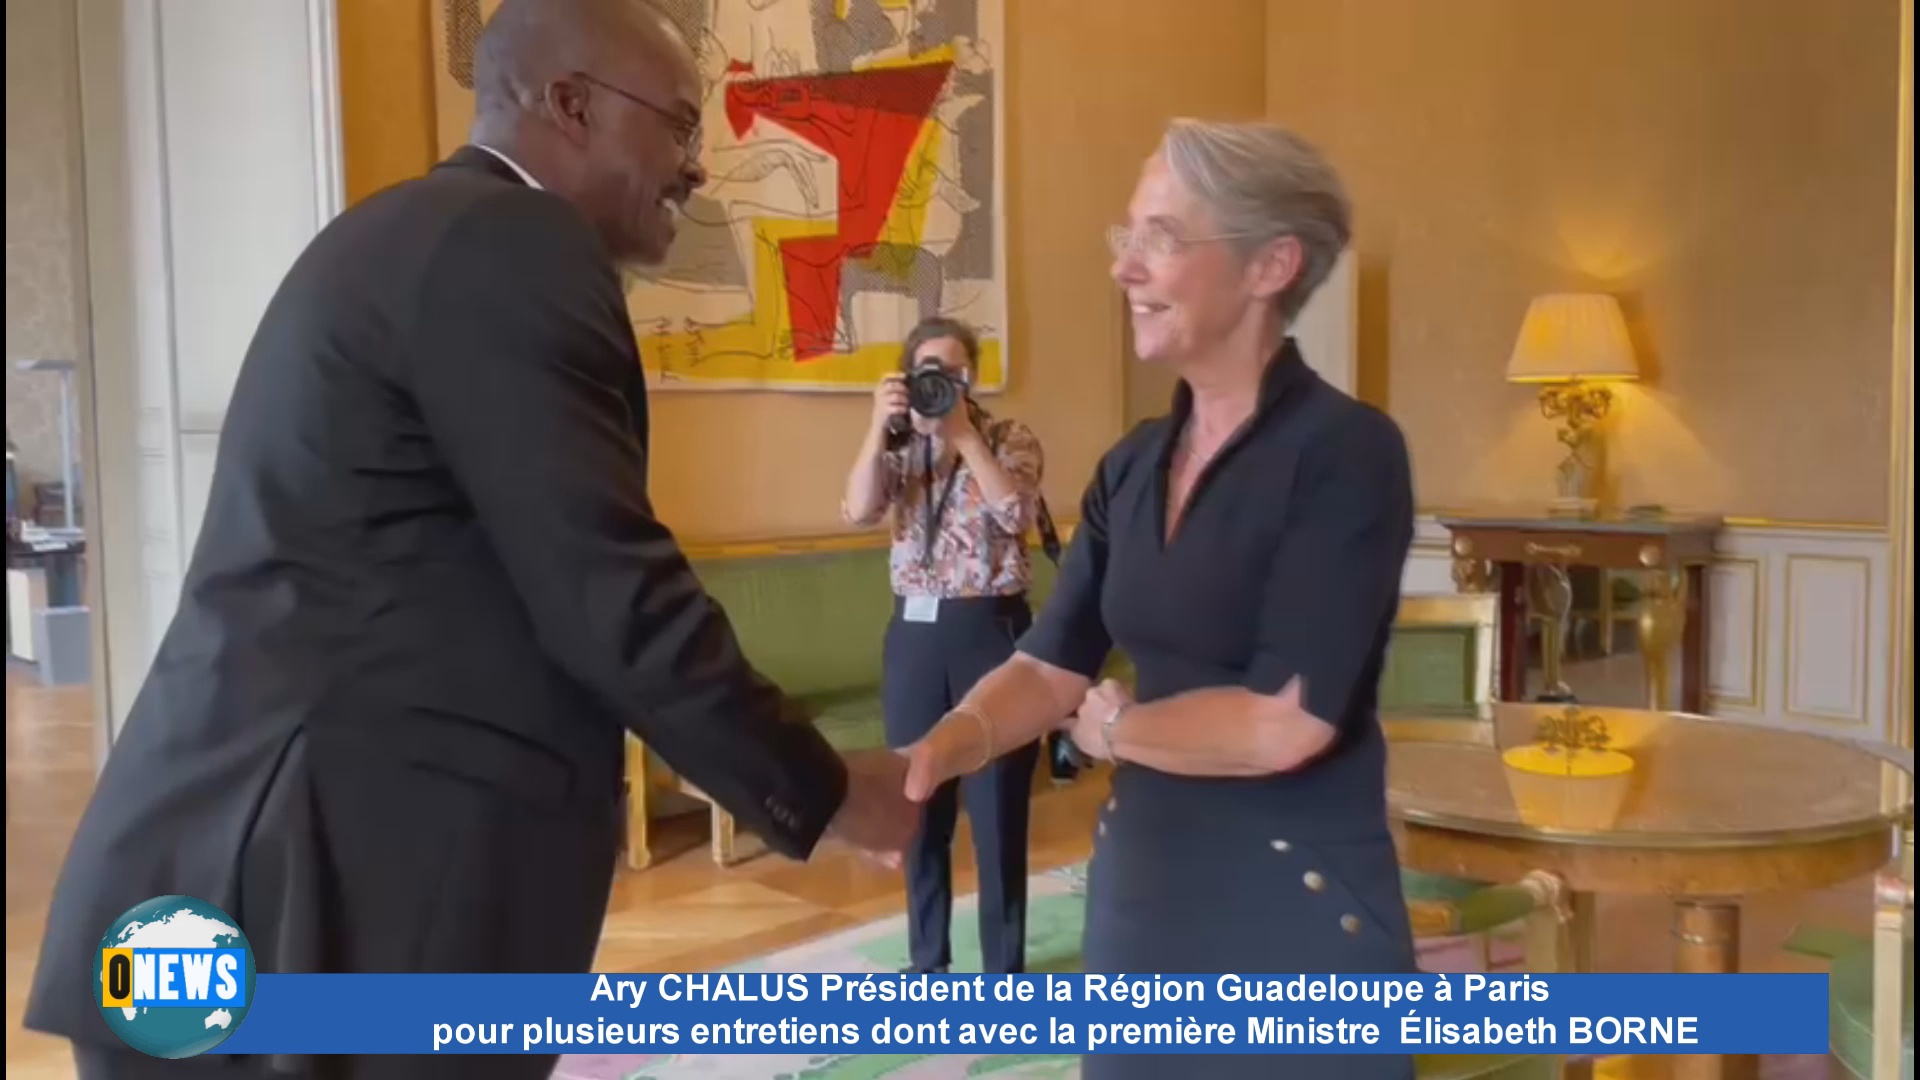 [Vidéo] Ary CHALUS Président de la Région Guadeloupe à Paris rencontre la Première ministre Elisabeth BORNE